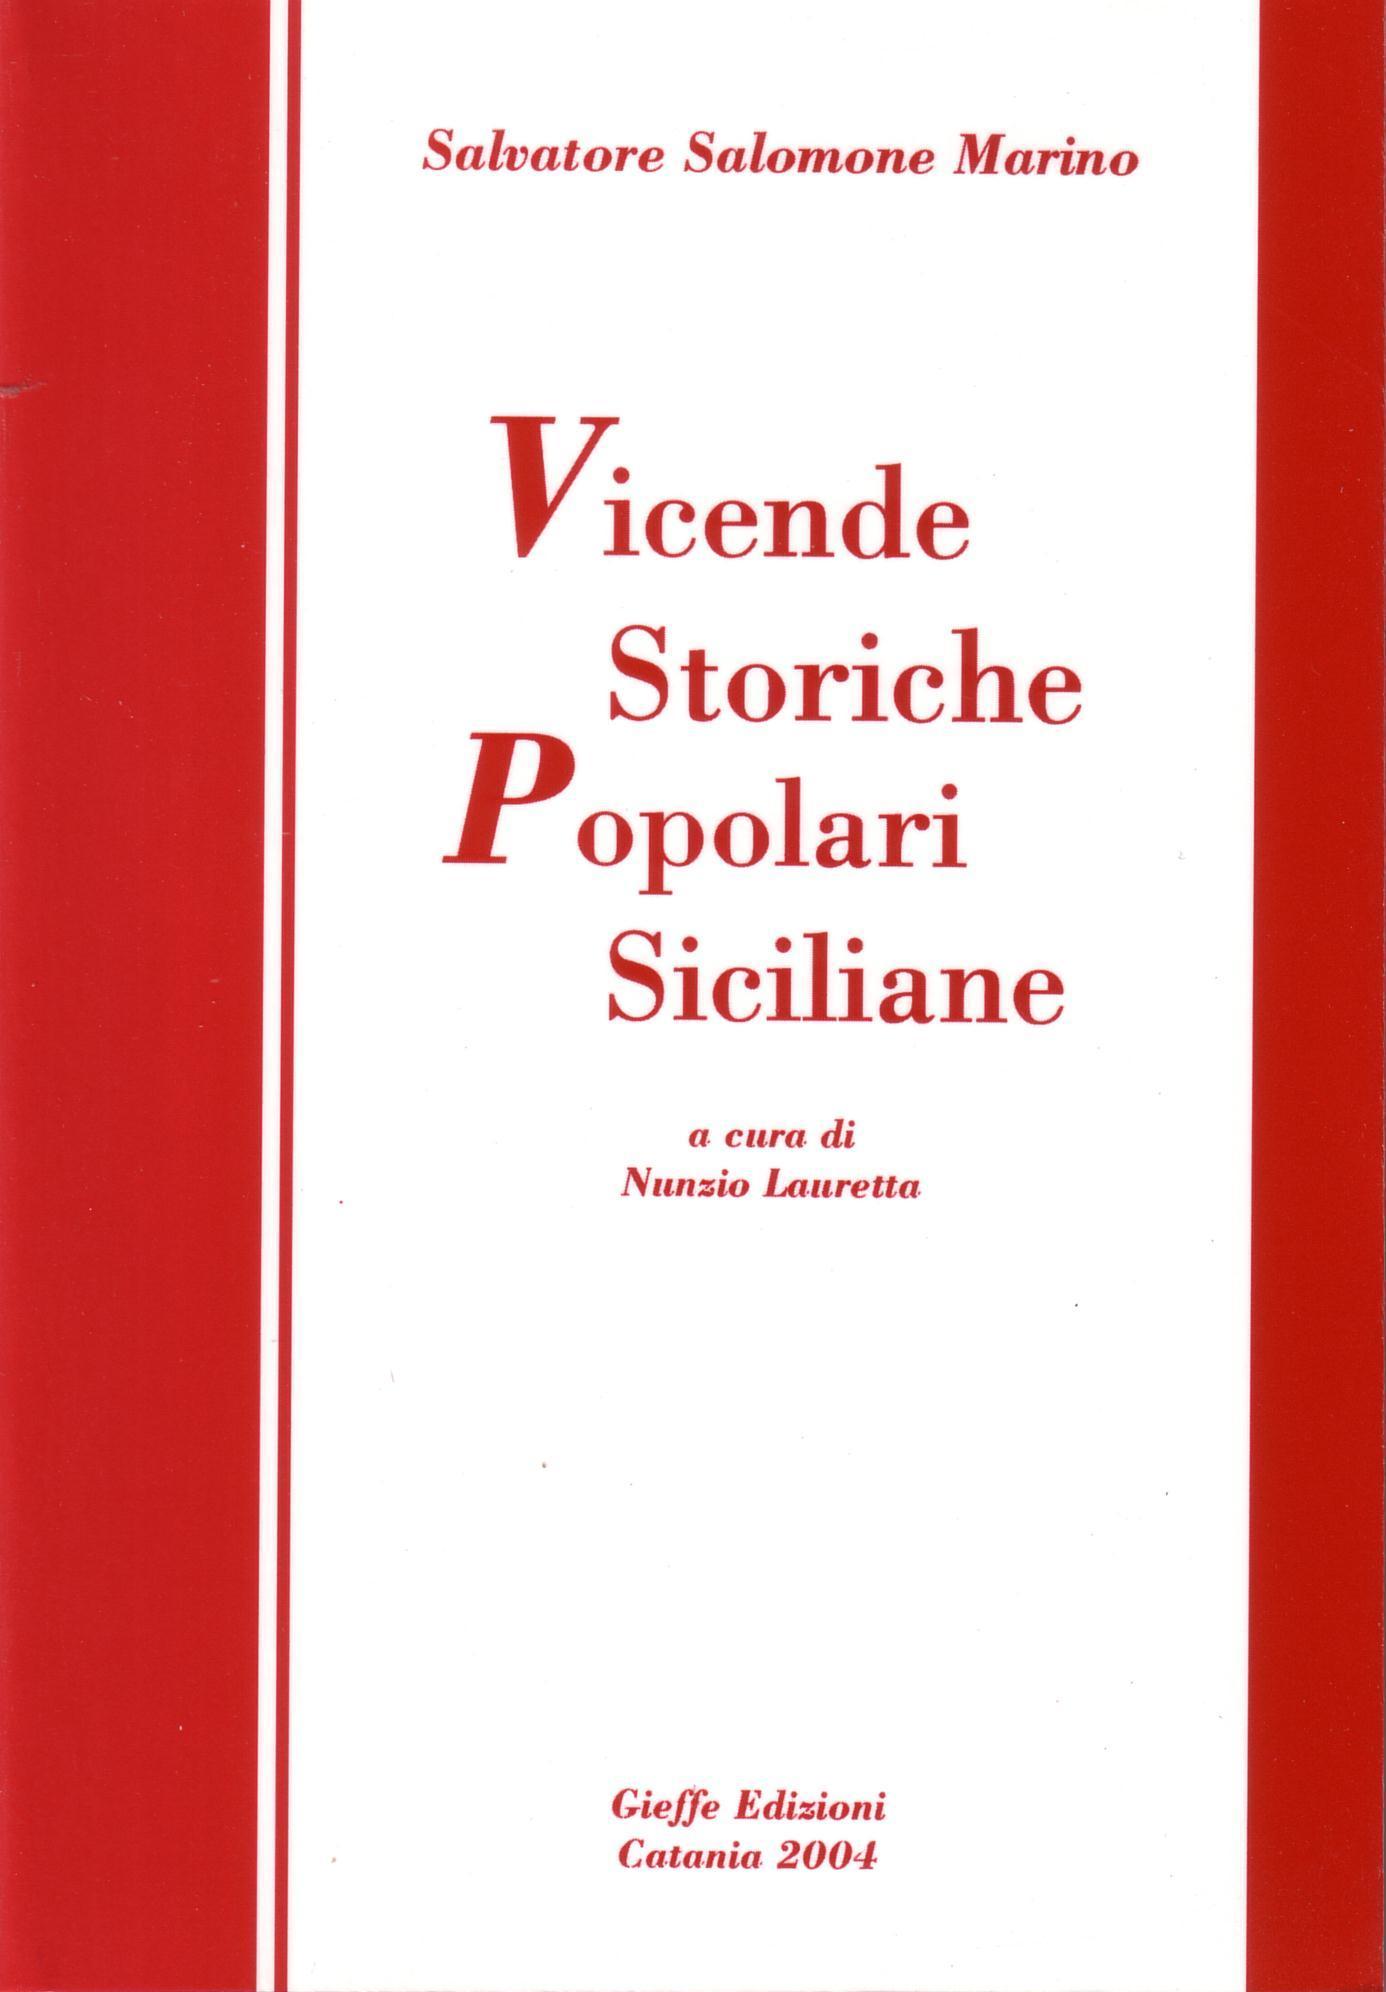 VICENDE_STORICHE_SICILIANE